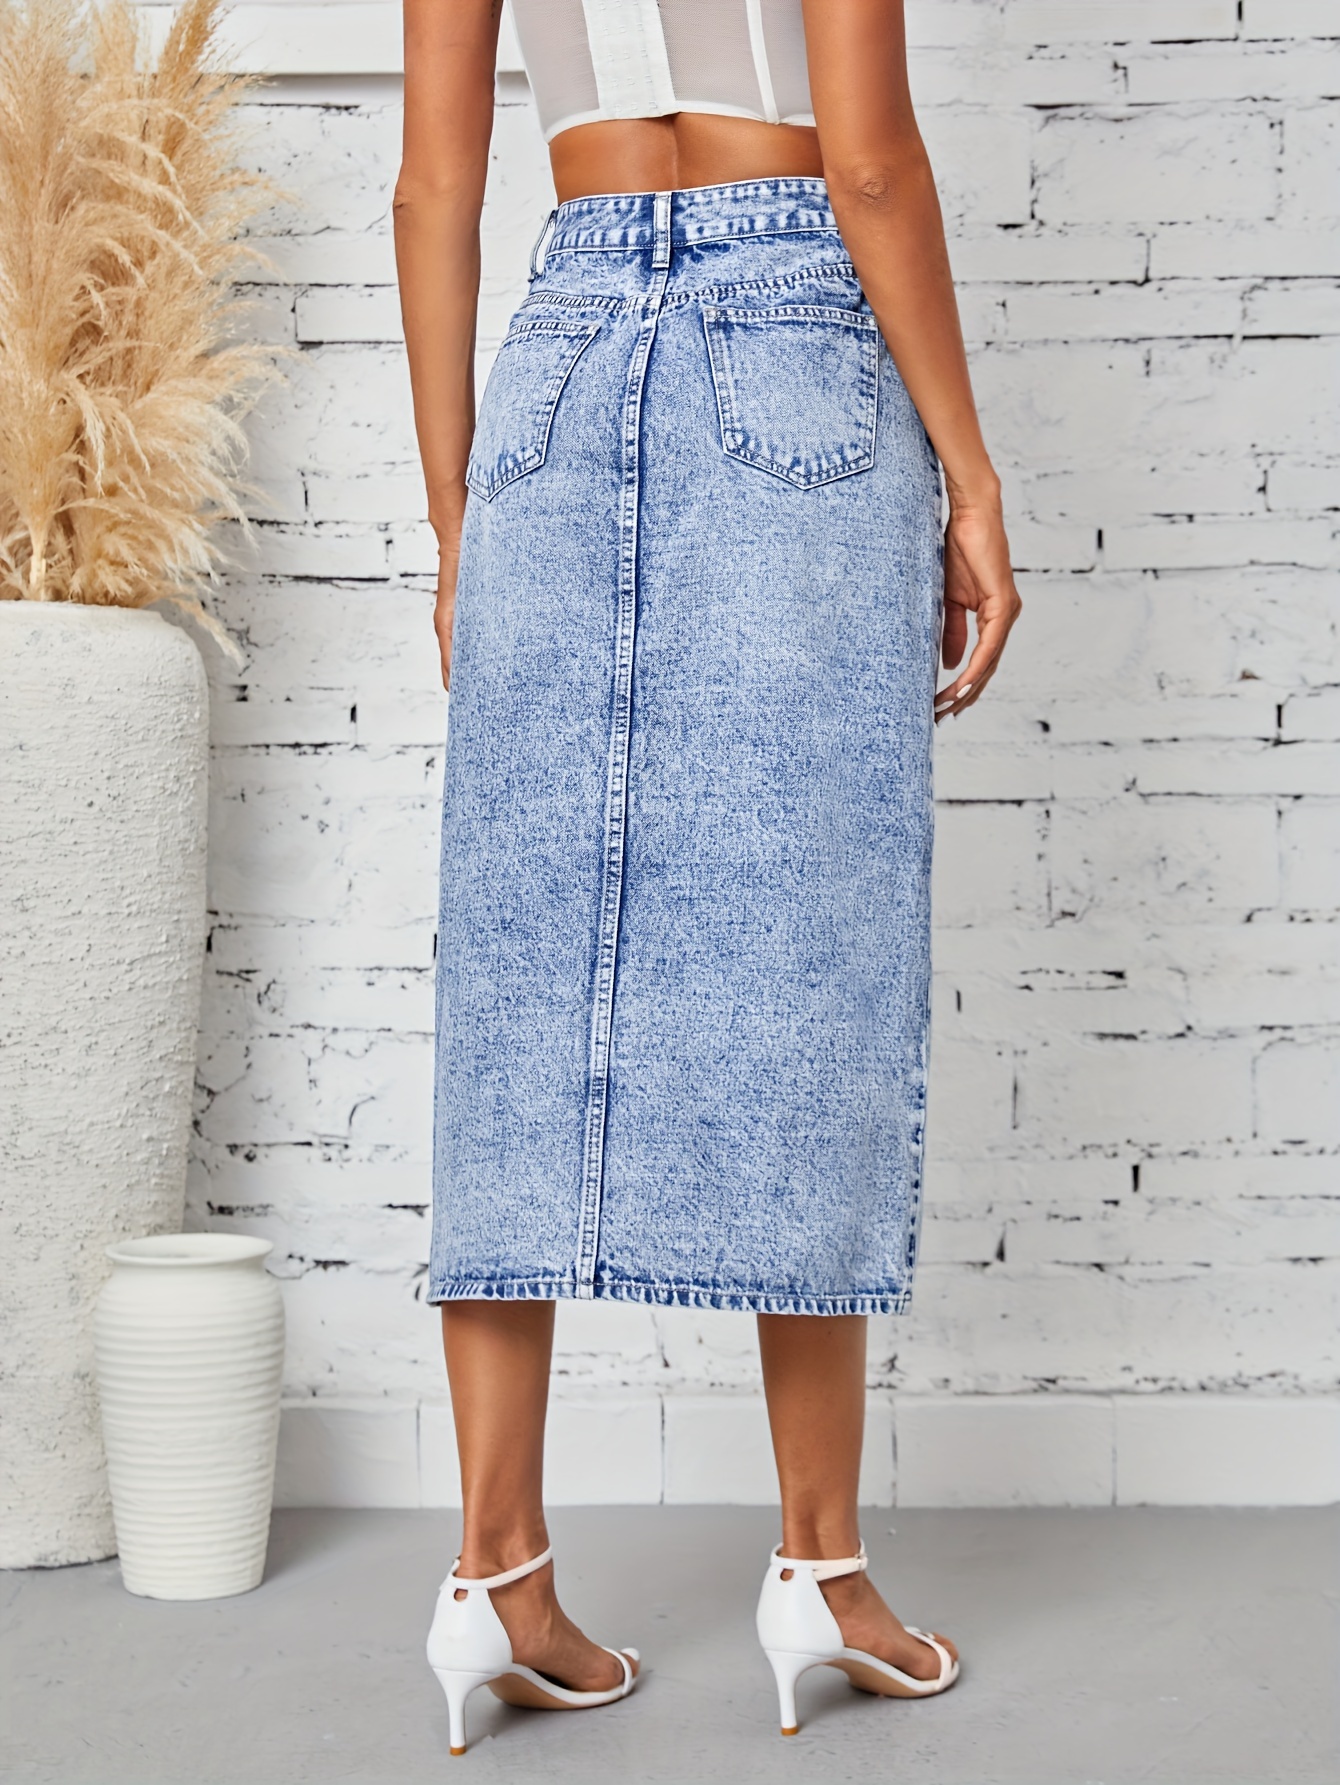  Women's Denim Skirt Casual High Waisted A-Line Front